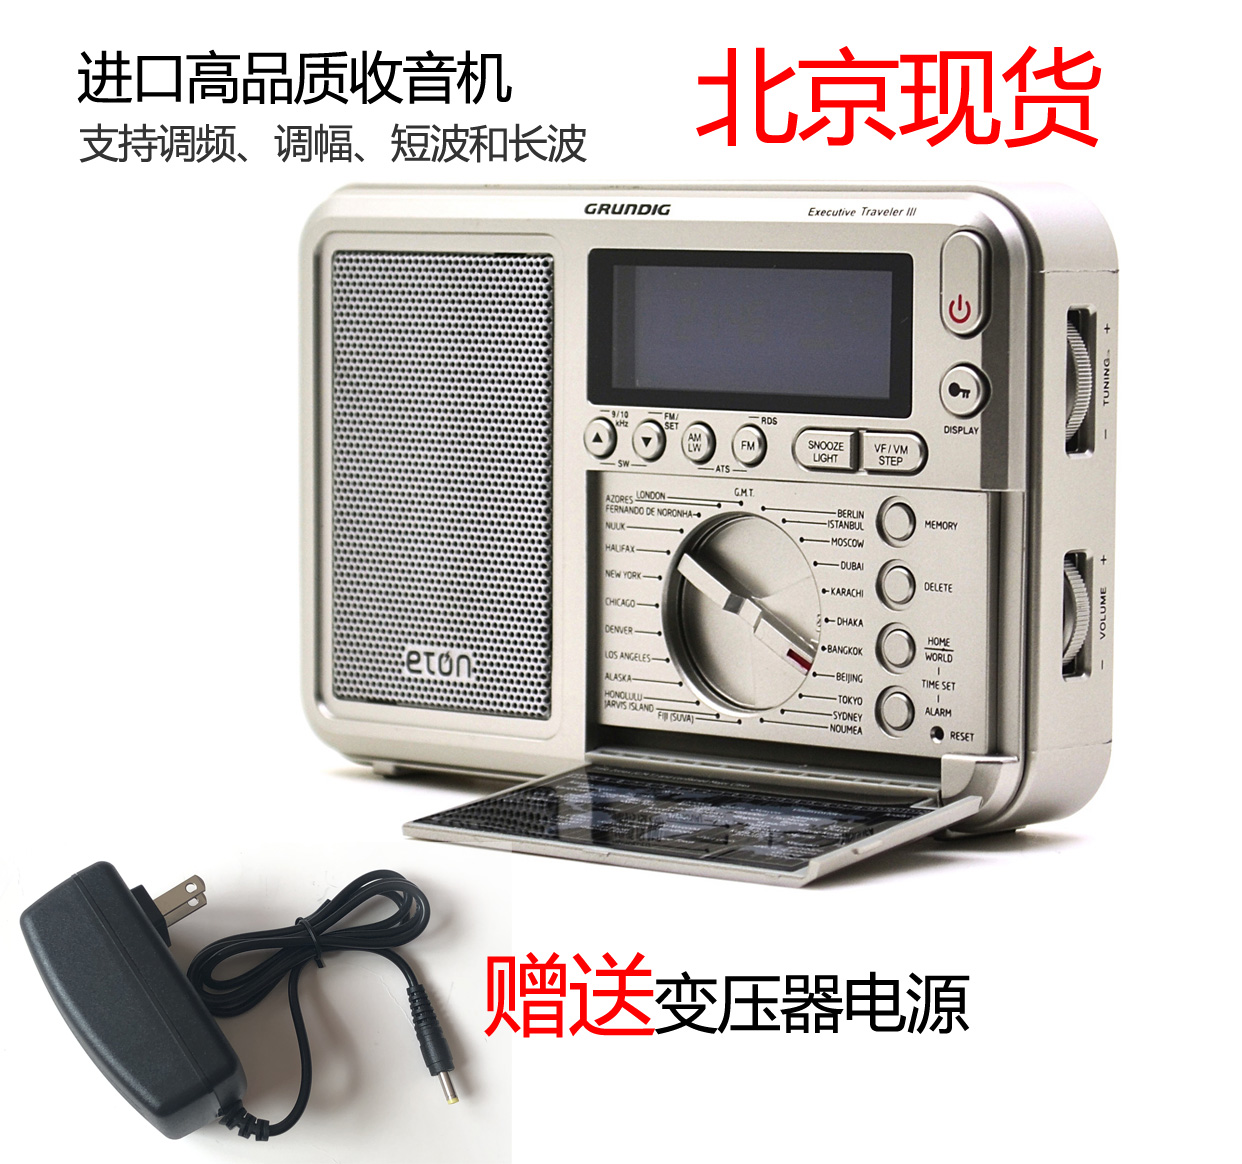 北京现货伊顿旅行者ETON/伊顿G2 全波段便携式短波收音机